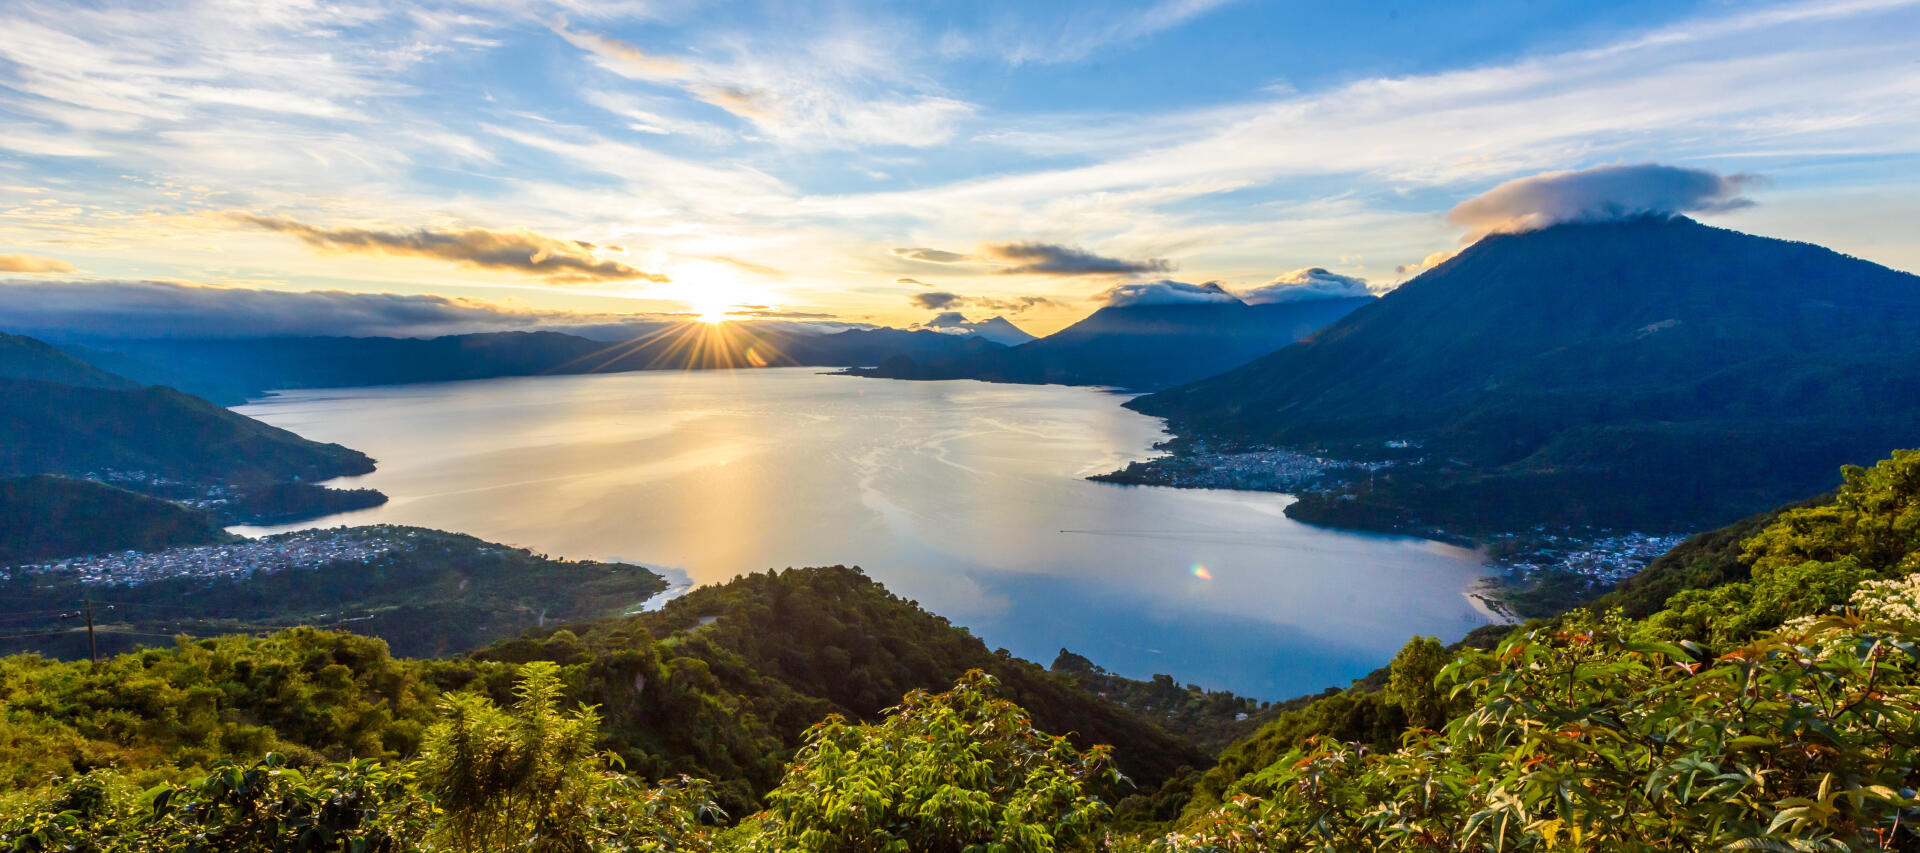 Travel to Guatemala: hike around lake atitlan